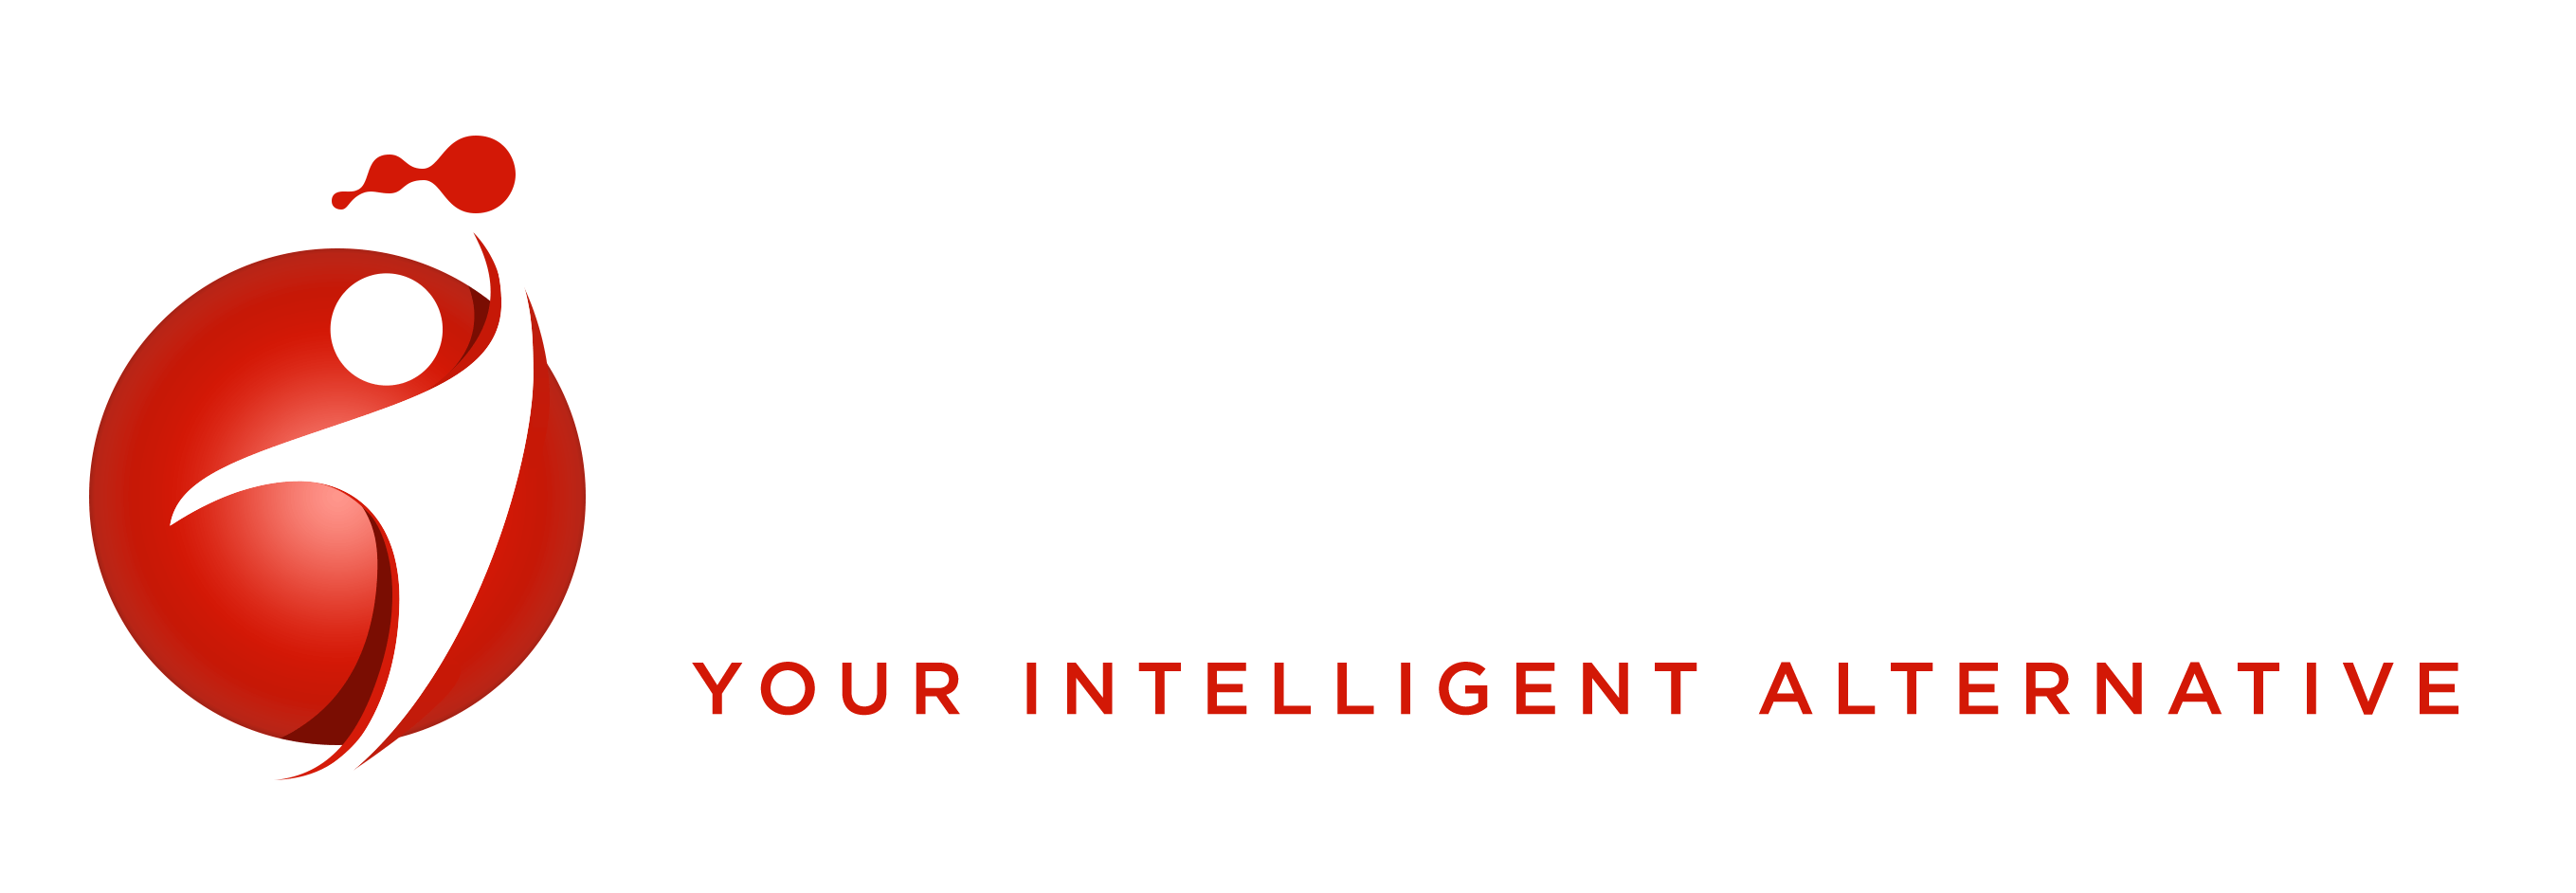 Region Authority Corp Logo